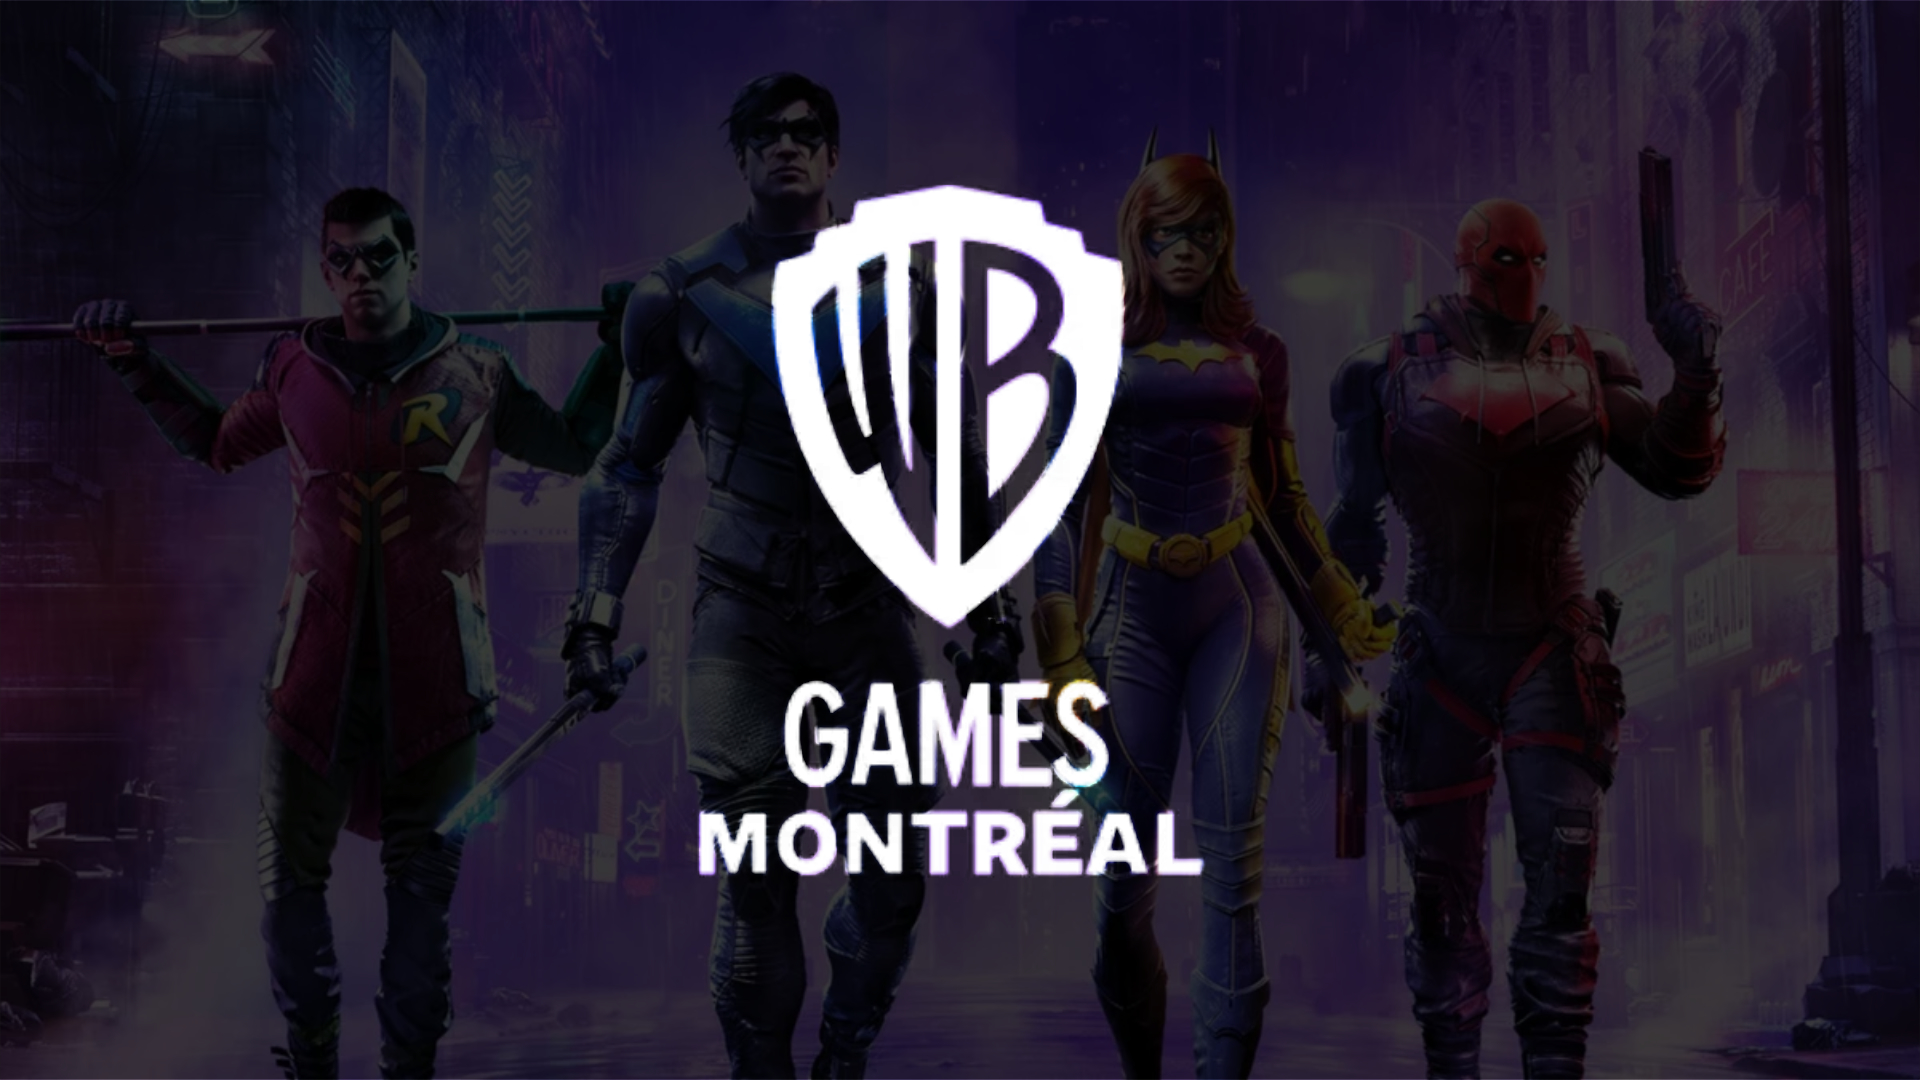 WB Games, game, logo, HD wallpaper